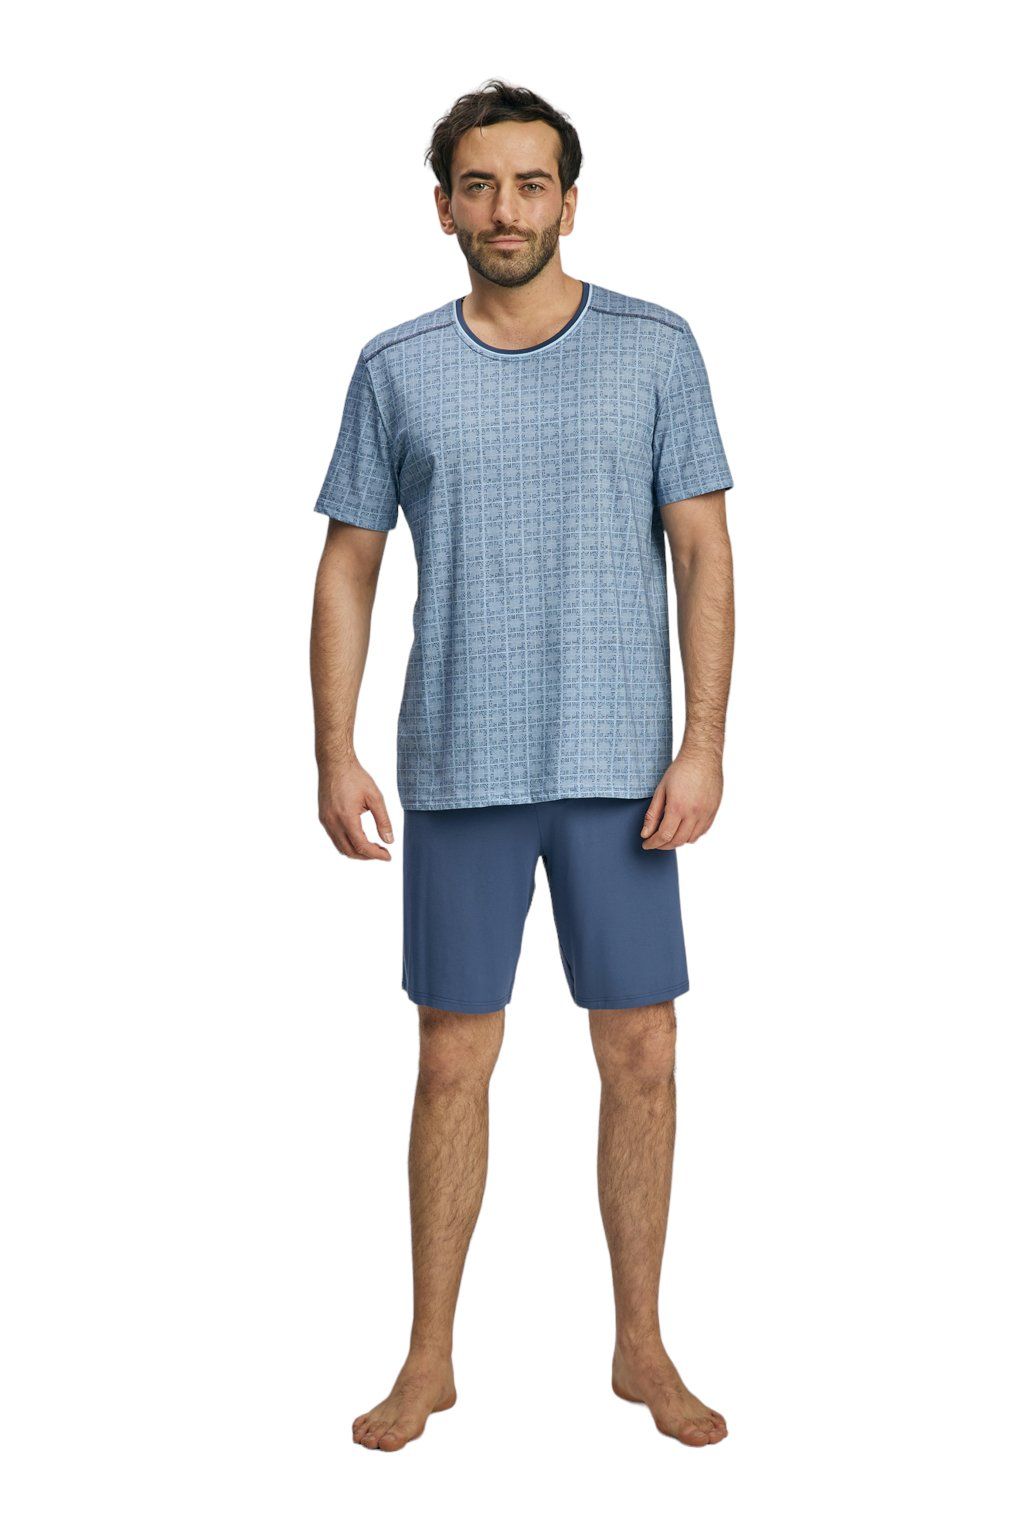 Pánské pyžamo s krátkým rukávem Wadima, 204150 416, modrá